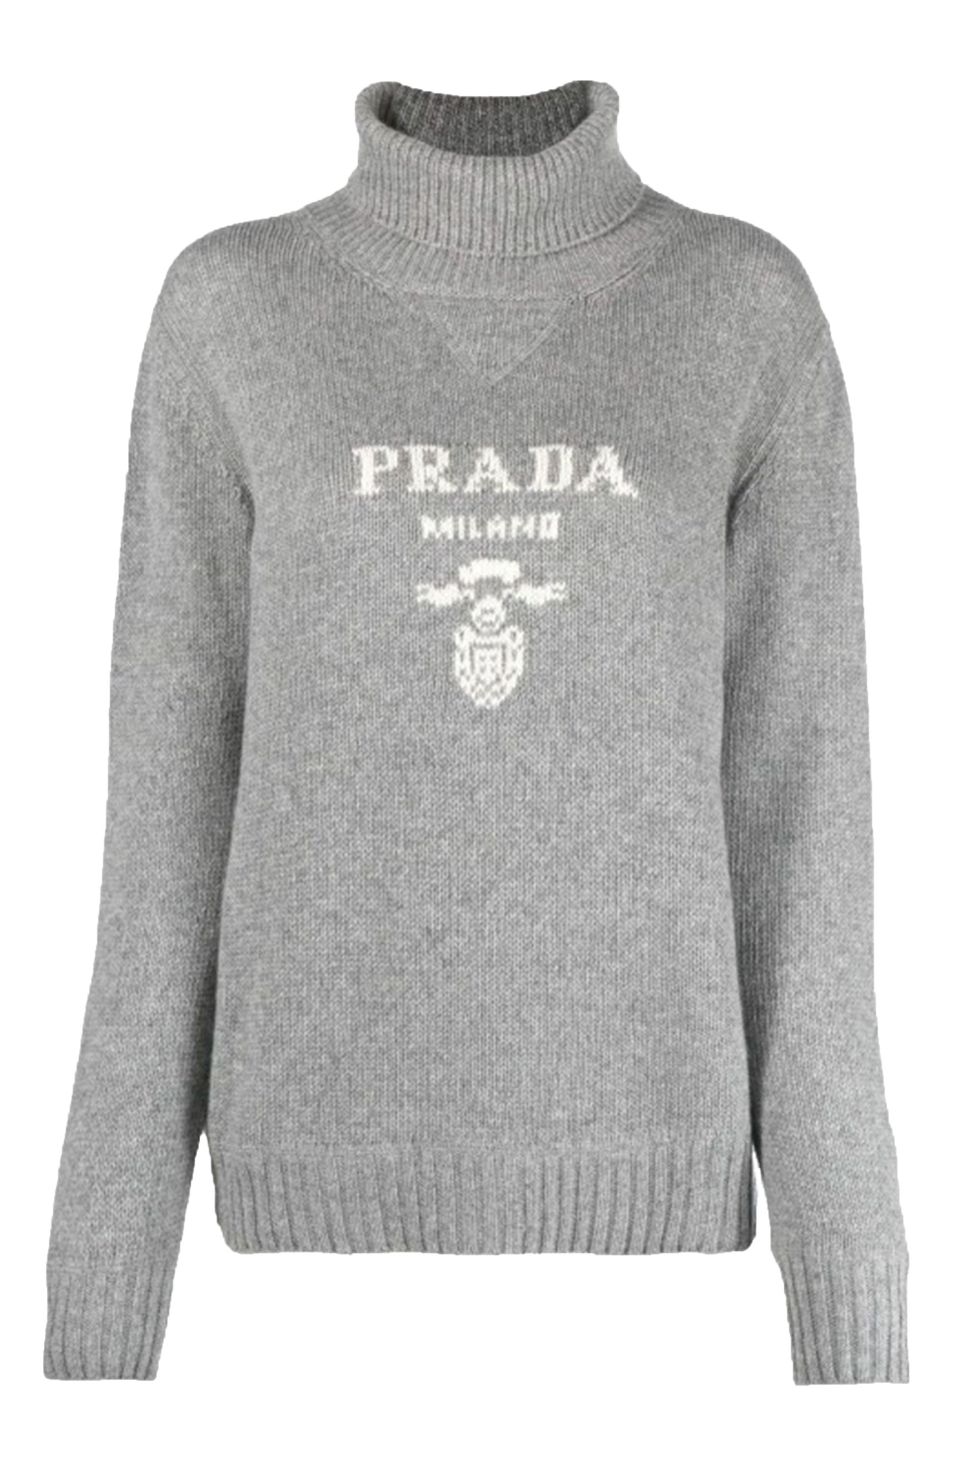 prada jumper, best knitwear